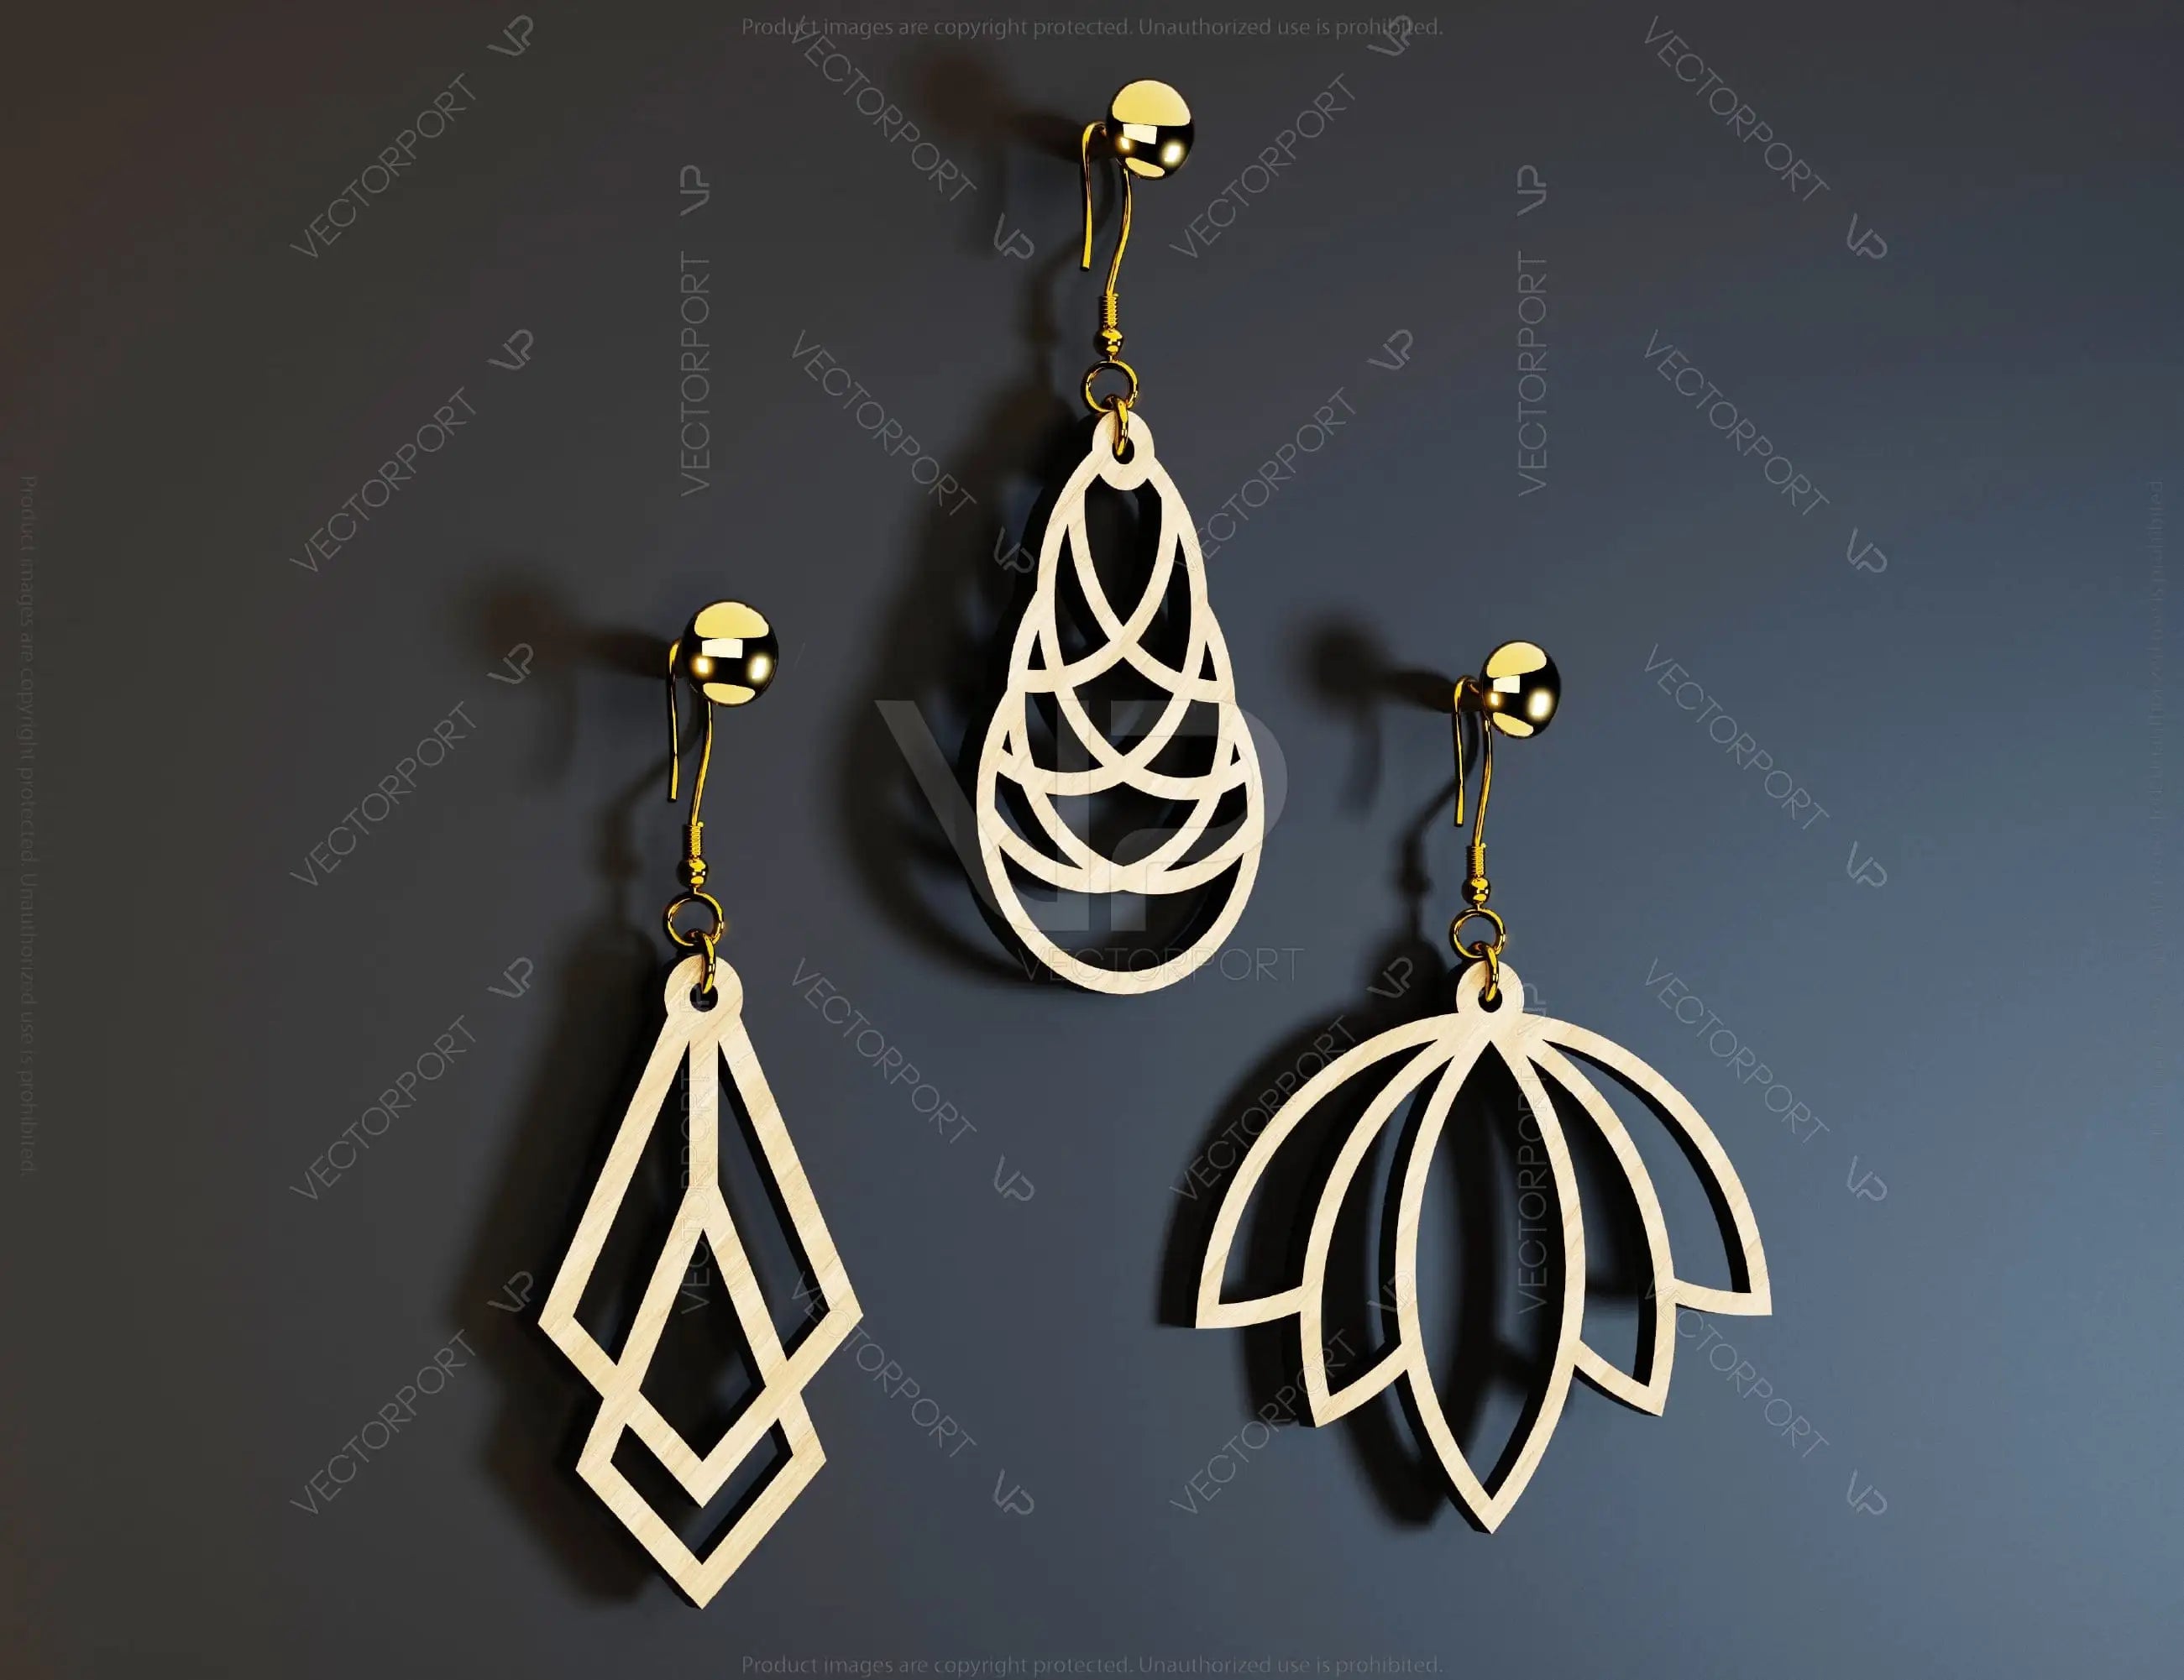 Modern Earrings Craft Jewelry Pendants Set Drop Laser cut Earrings SVG Template Silhouette Cut Files, Cricut Cut Files |#U018|